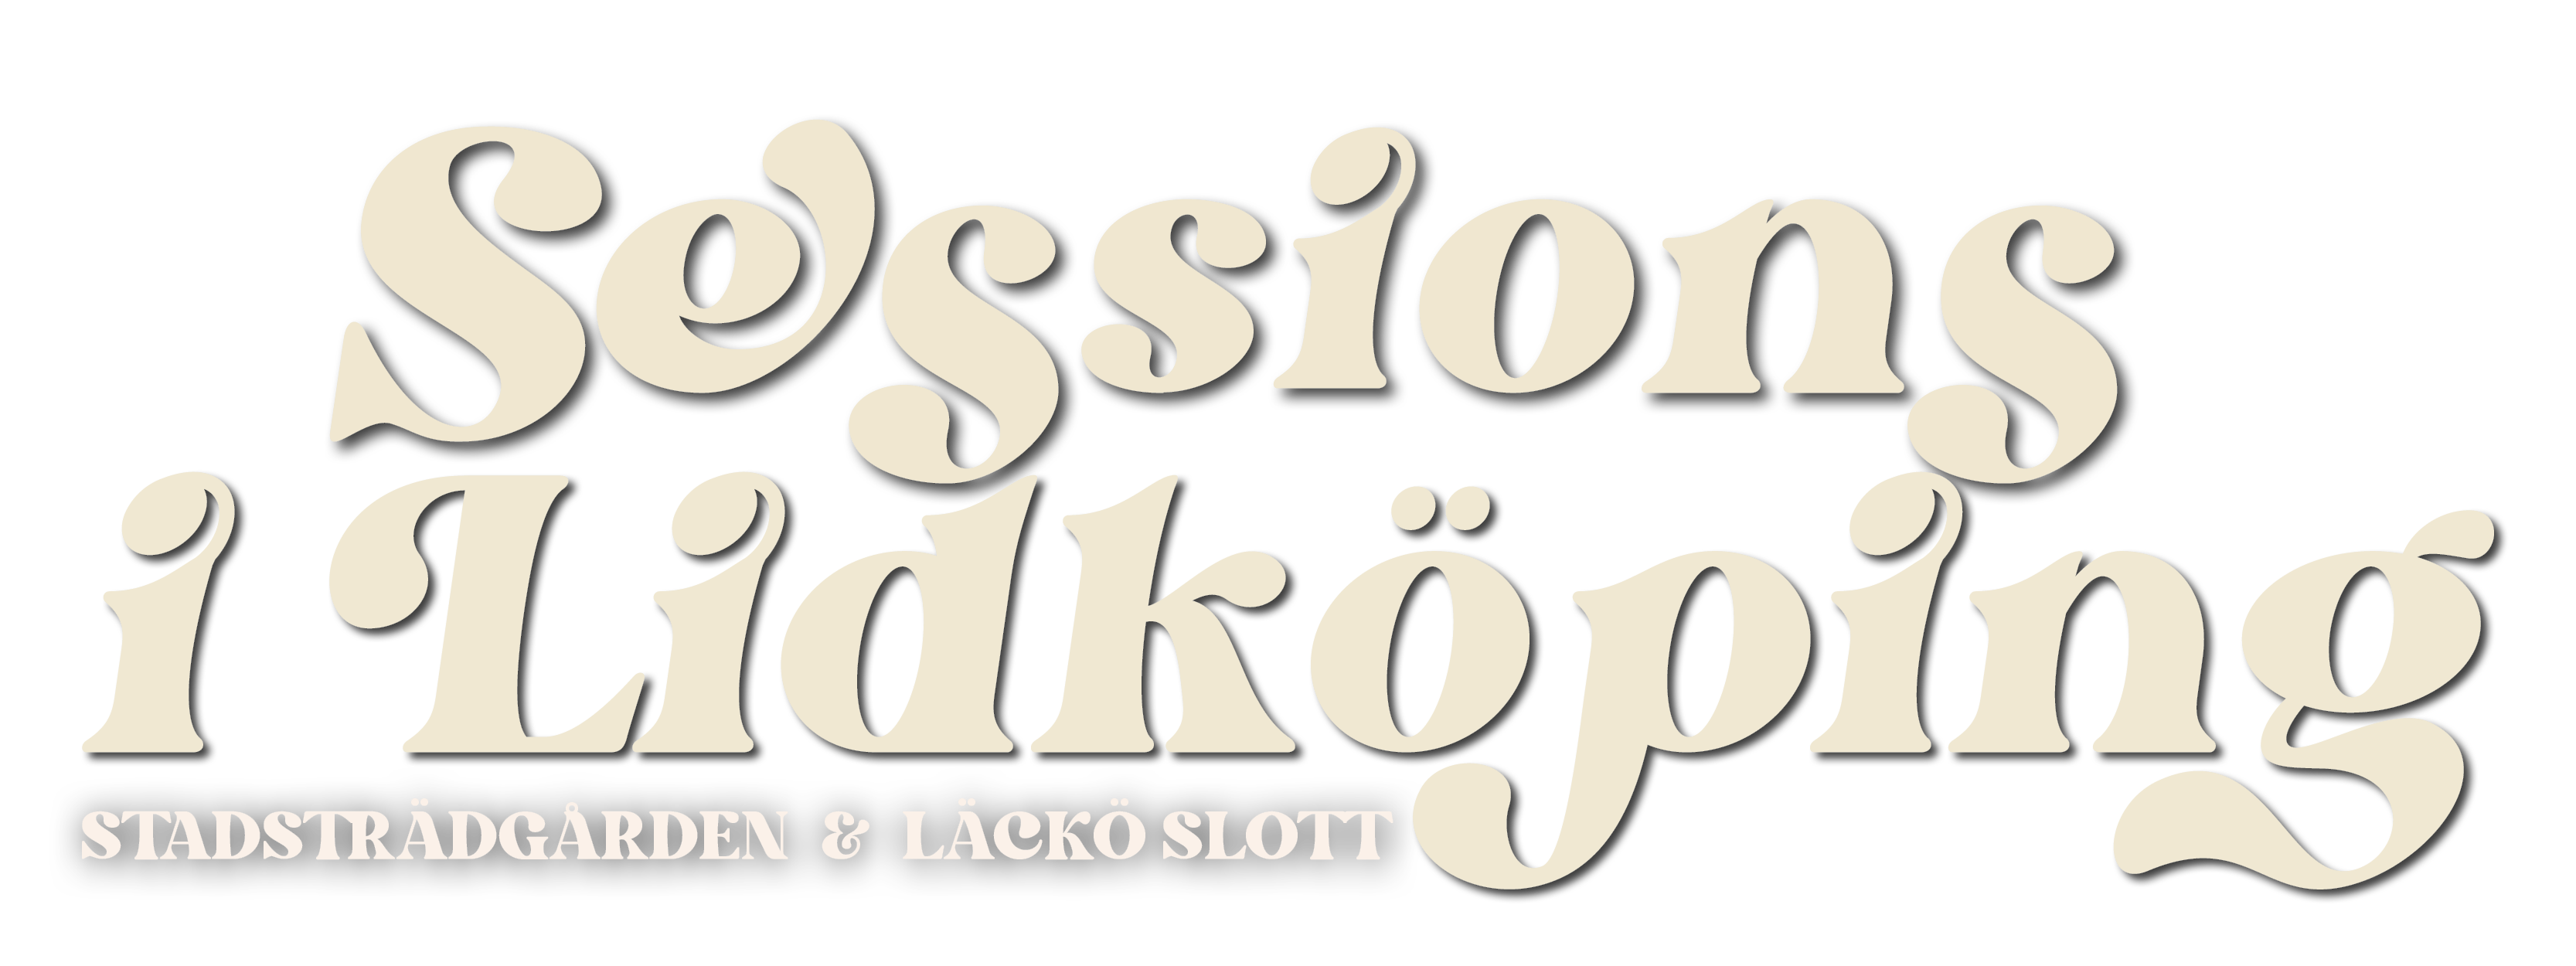 Sessions i Lidköping